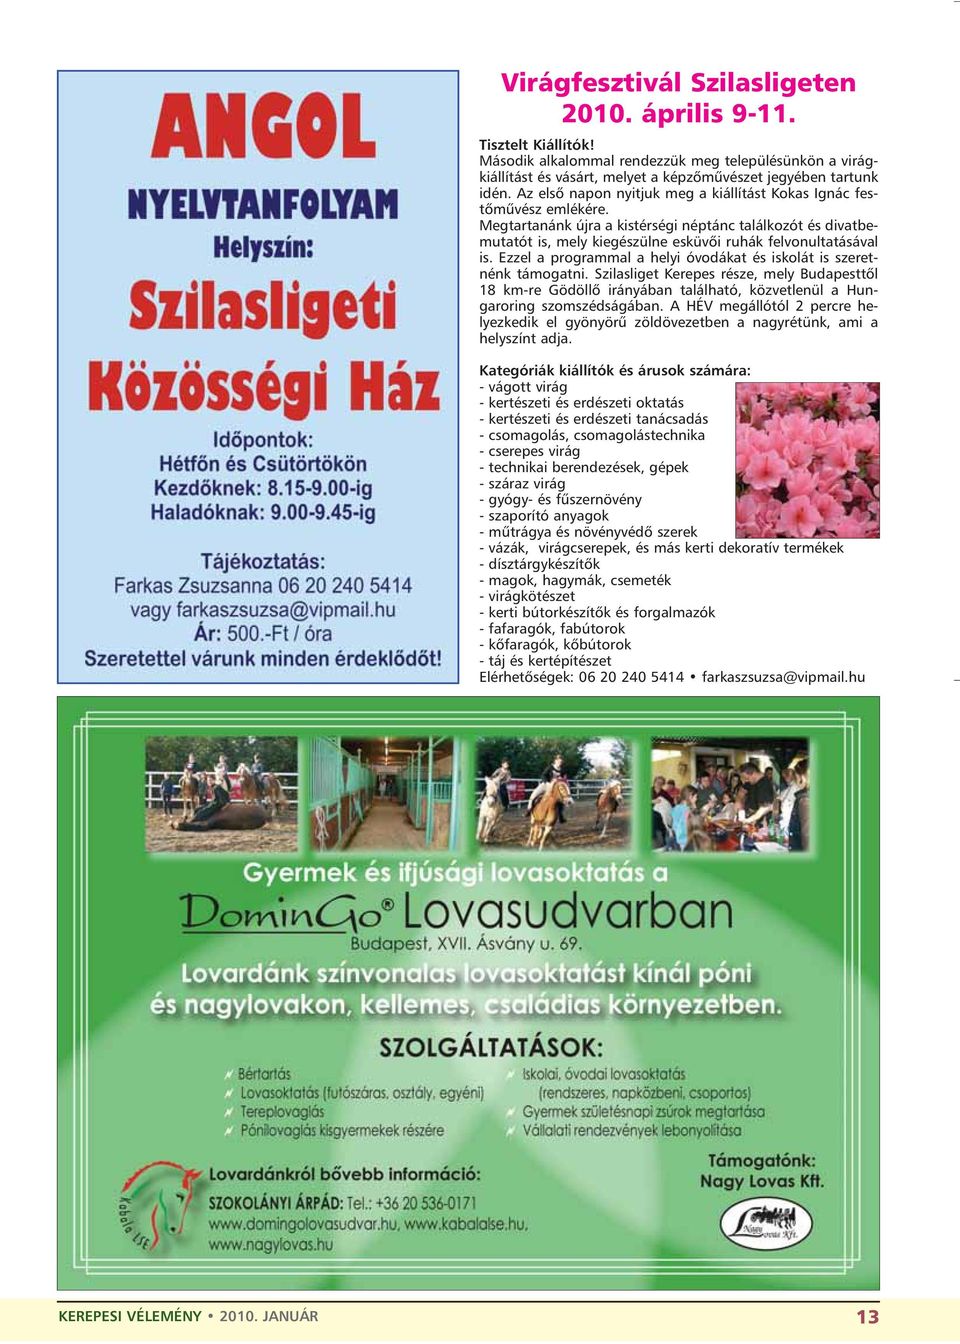 Ezzel a programmal a helyi óvodákat és iskolát is szeretnénk támogatni. Szilasliget Kerepes része, mely Budapesttõl 18 km-re Gödöllõ irányában található, közvetlenül a Hungaroring szomszédságában.